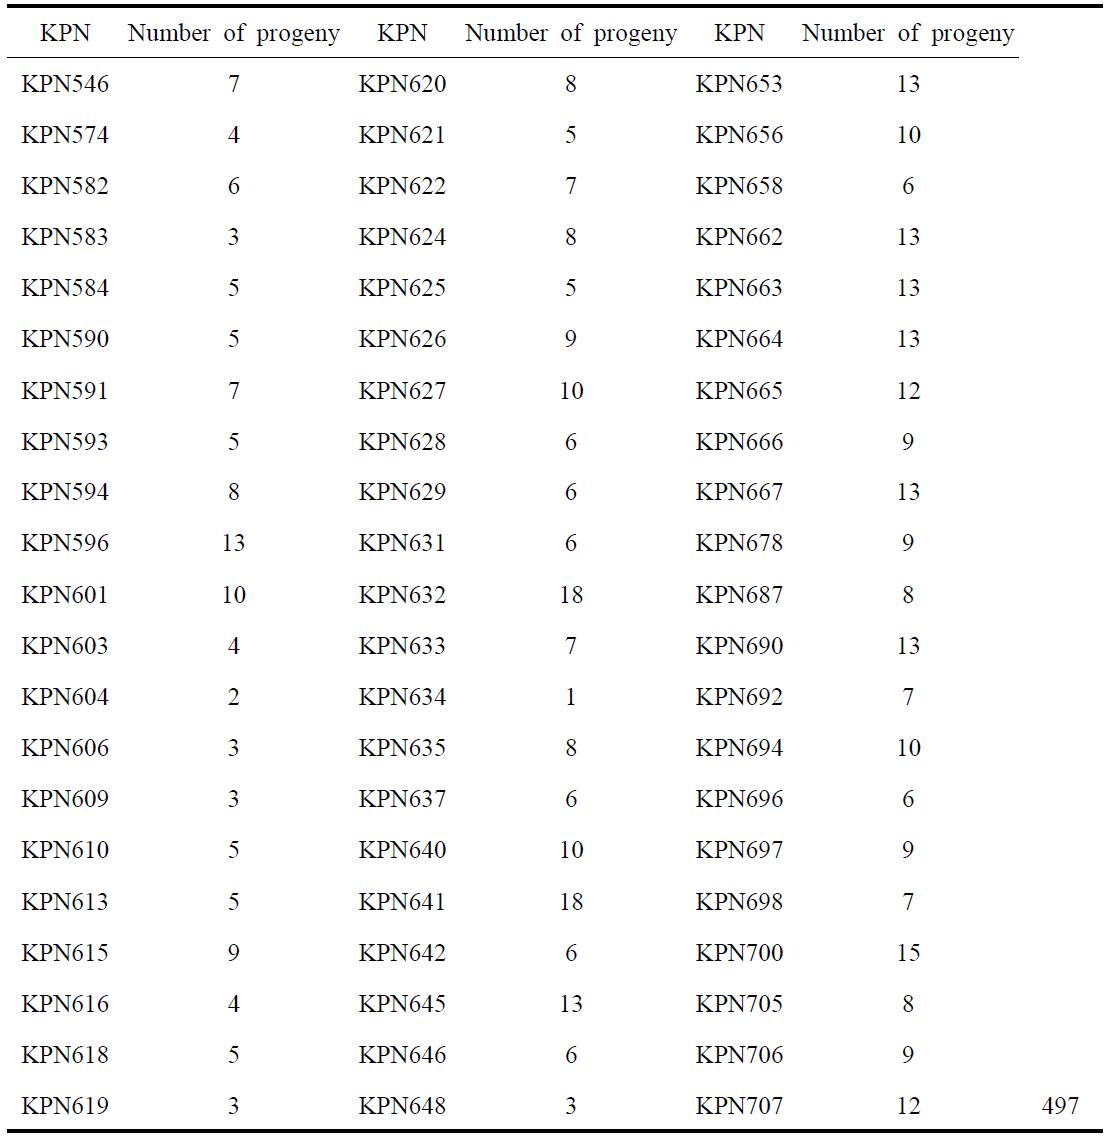 The number of KPN for 497 Progeny-Test Bulls